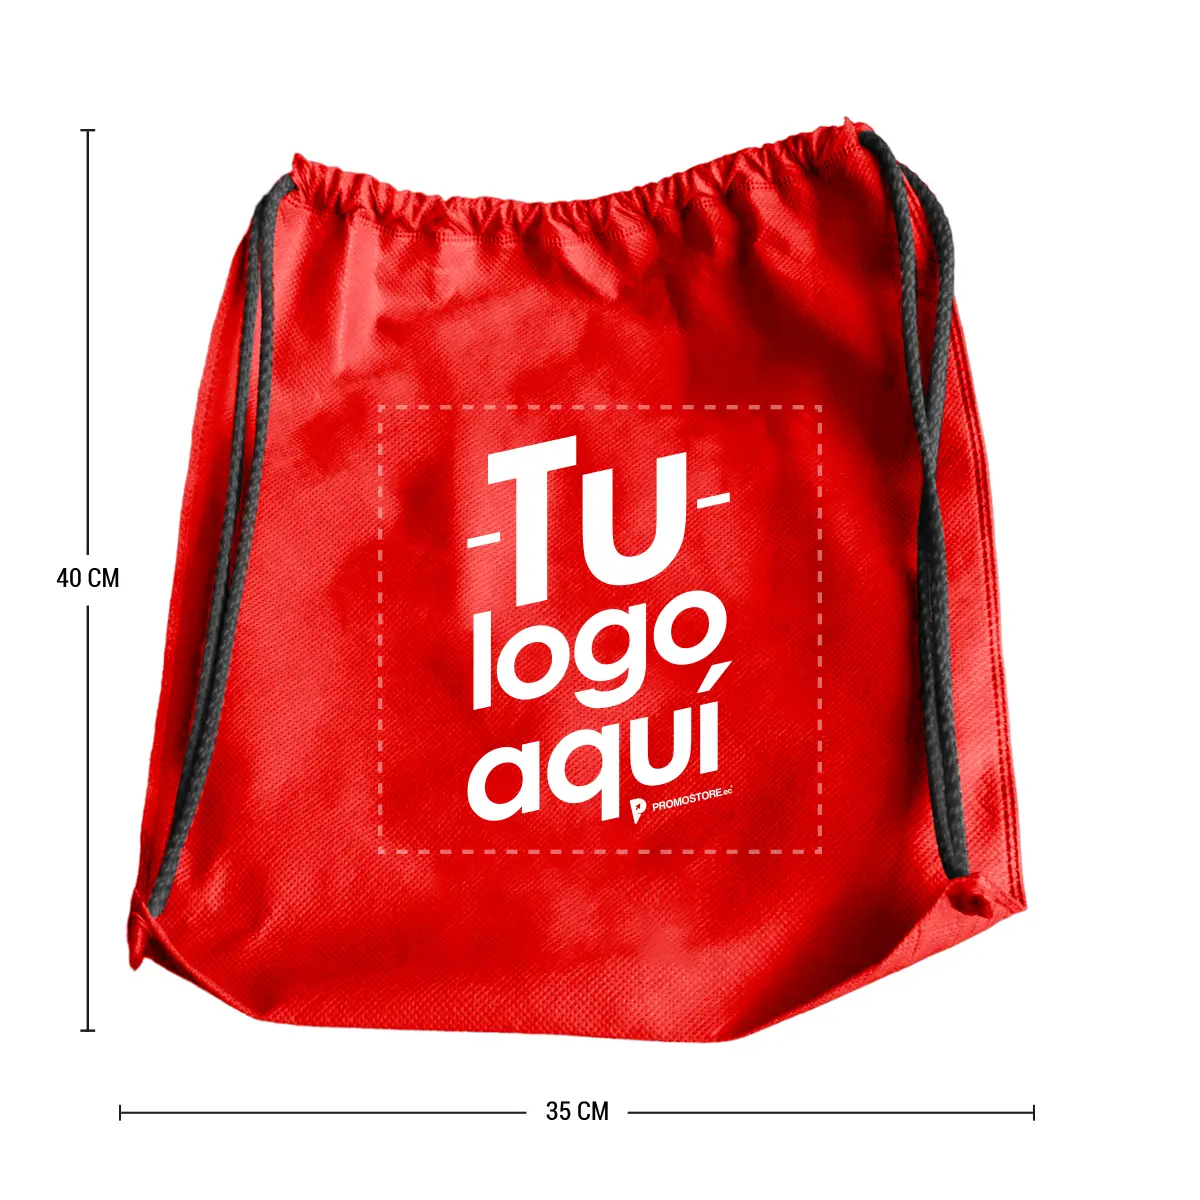 z01-TXBL0029-Sport-bag-cambrela-termosellada-35×40-cm-medida